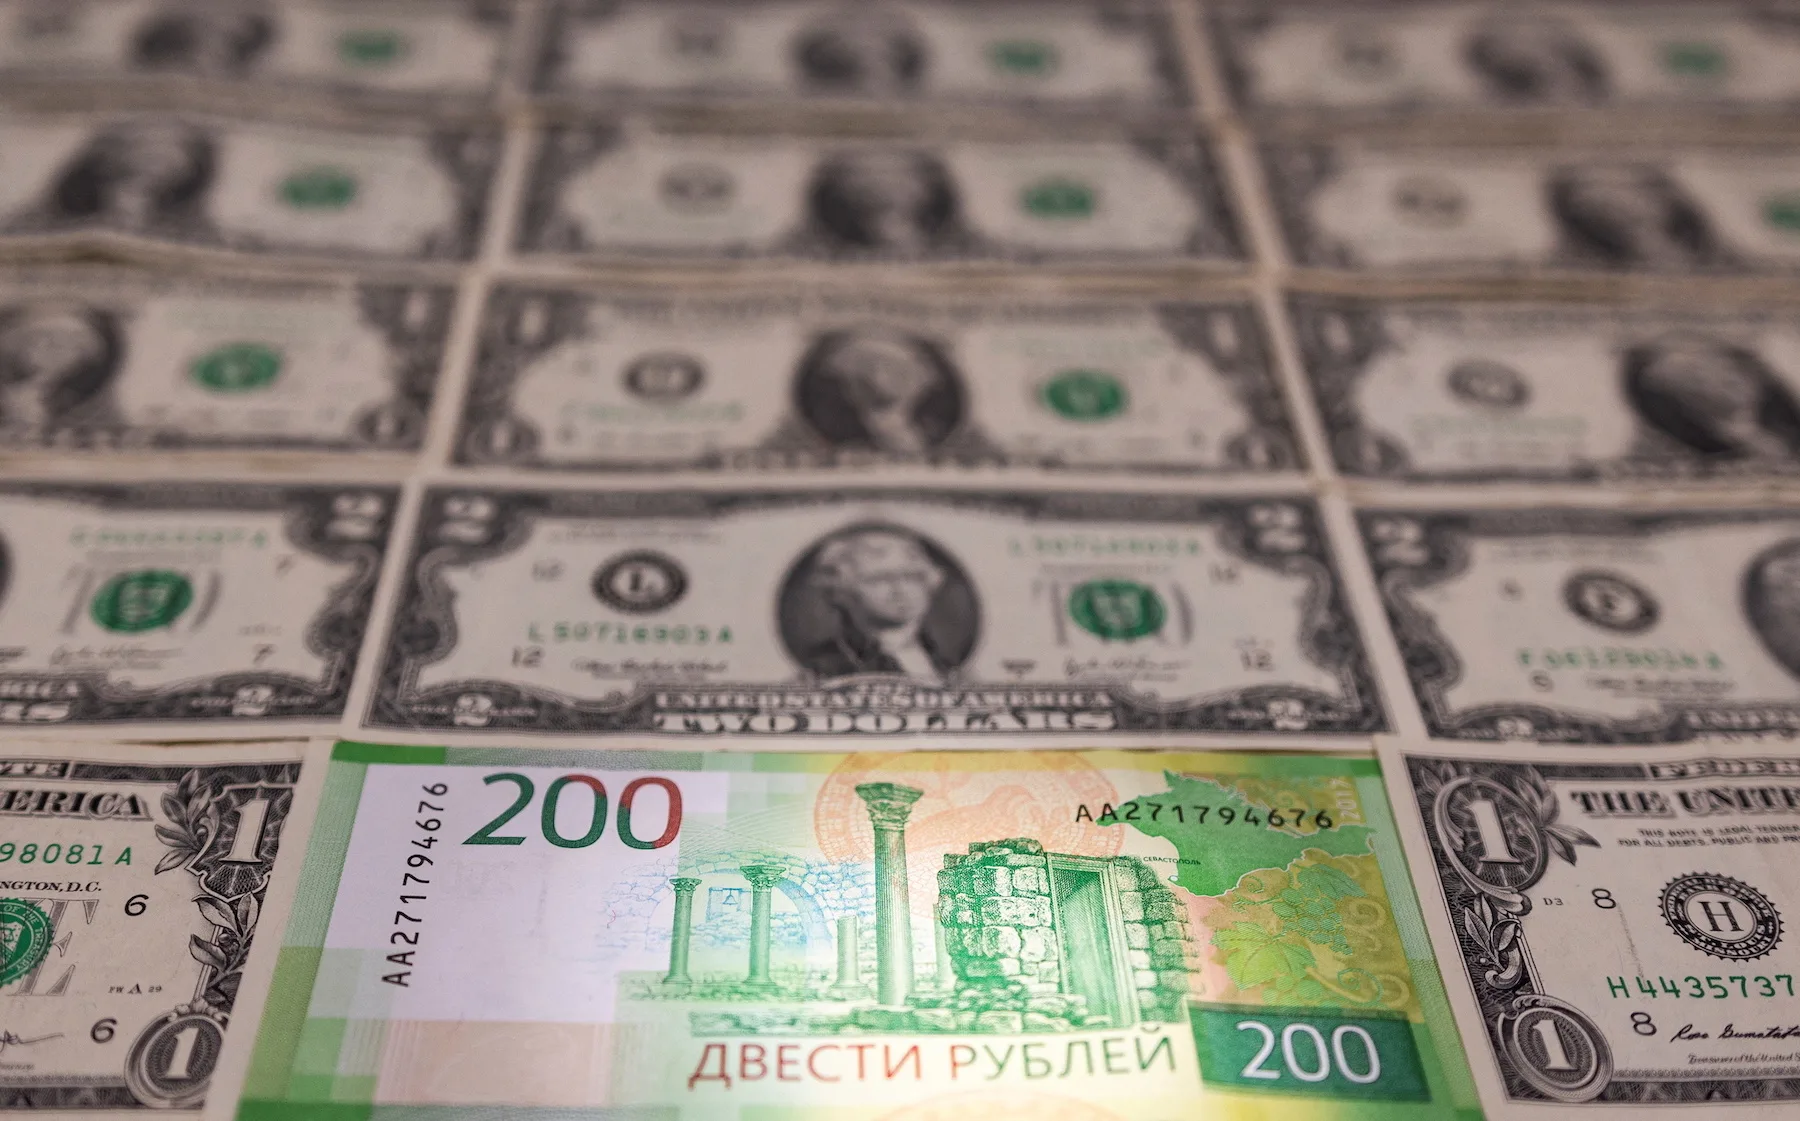 Η Ρωσία προσπαθεί να αποφύγει τη χρεοκοπία, πληρώνοντας ομόλογα σε δολάρια την τελευταία στιγμή